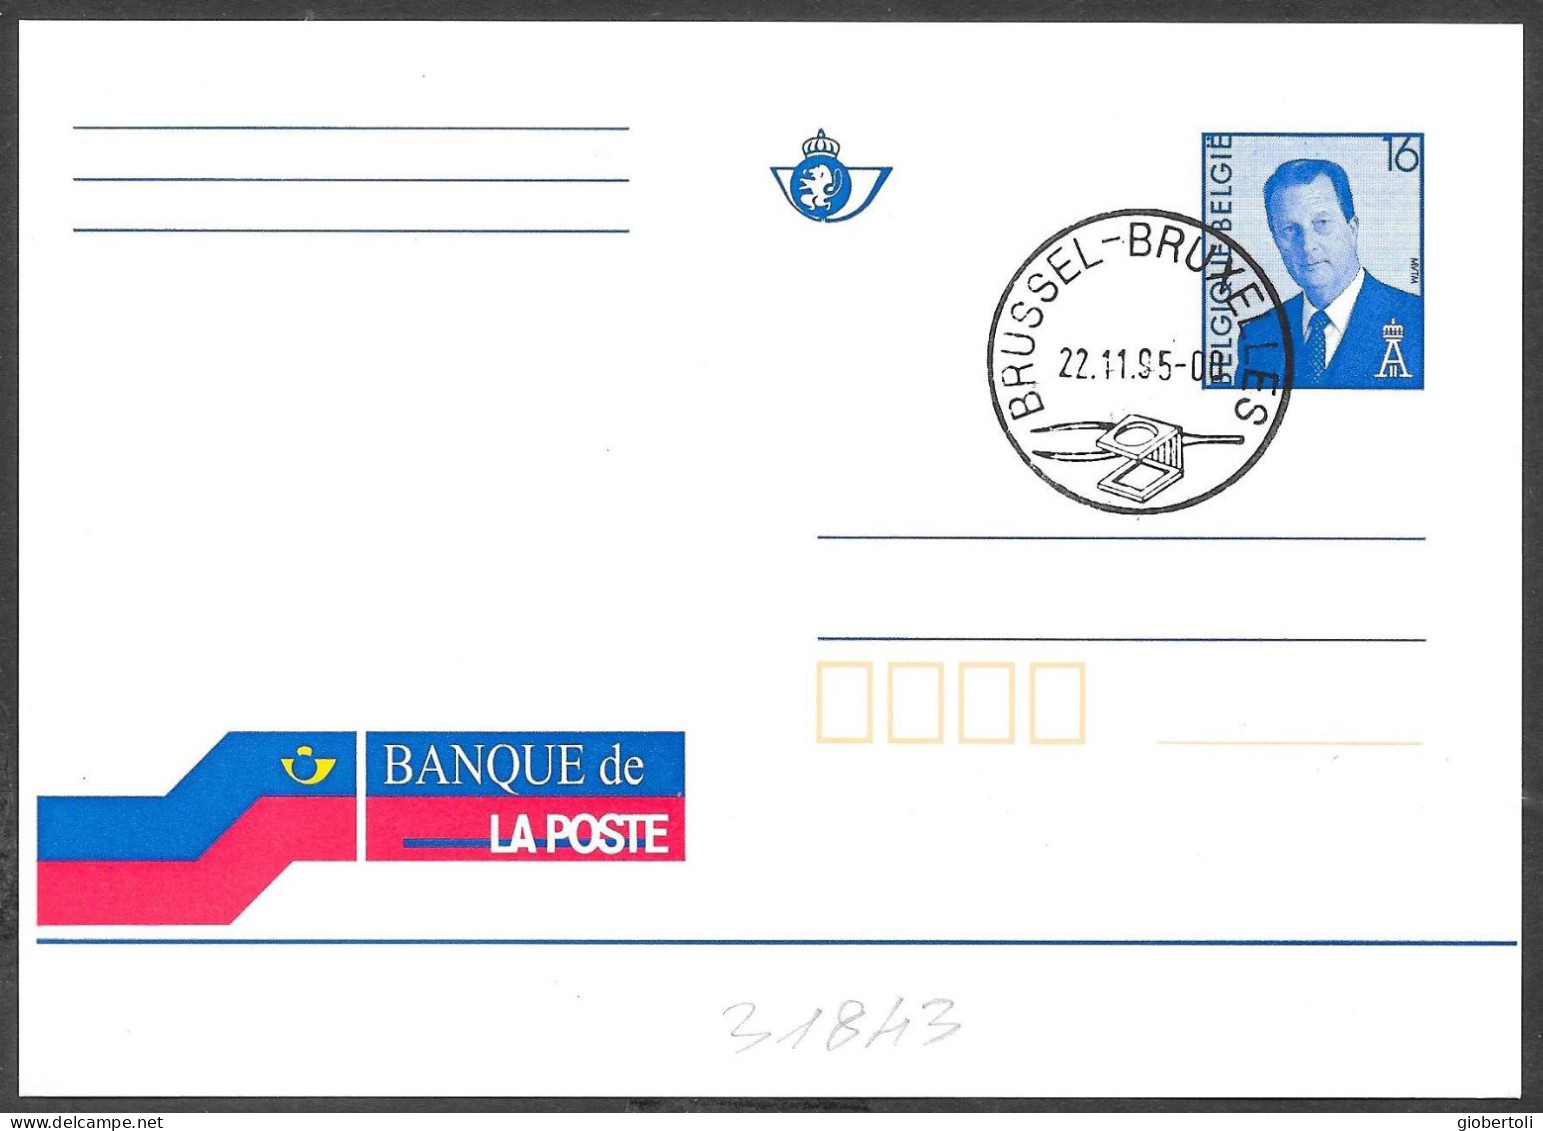 Belgio/Belgium/Belgique: FDC, Intero, Stationery, Entier, Banca De "La Post", Bank Of "La Post", Banque De "La Poste" - Posta